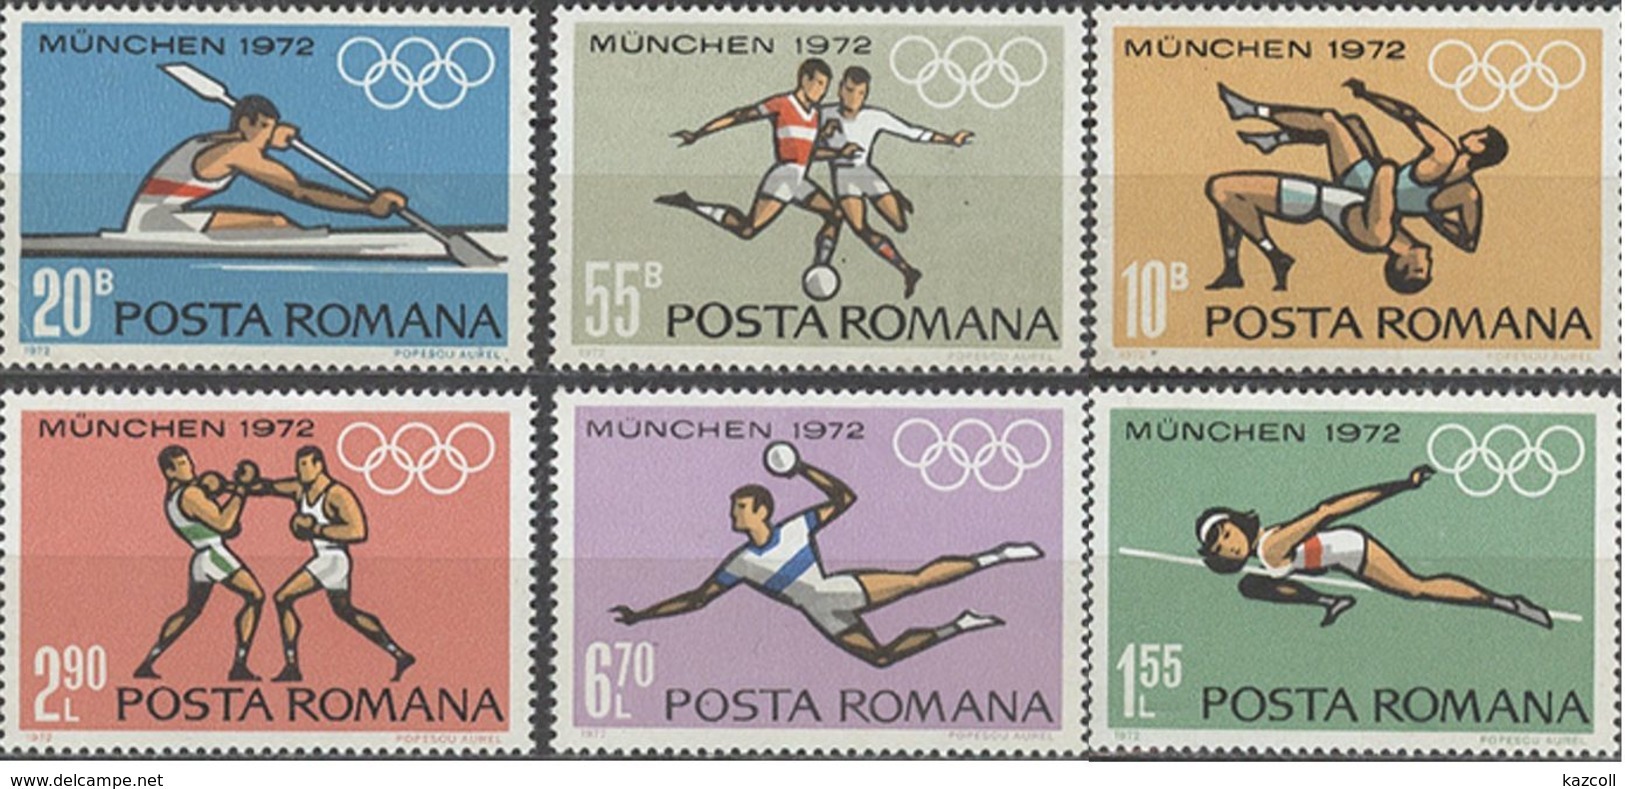 Игры мюнхен 1972. Румынский спорт. Олимпийские игры в Мюнхене 1972 доклад. Марка Мюнхен 1972 цена.